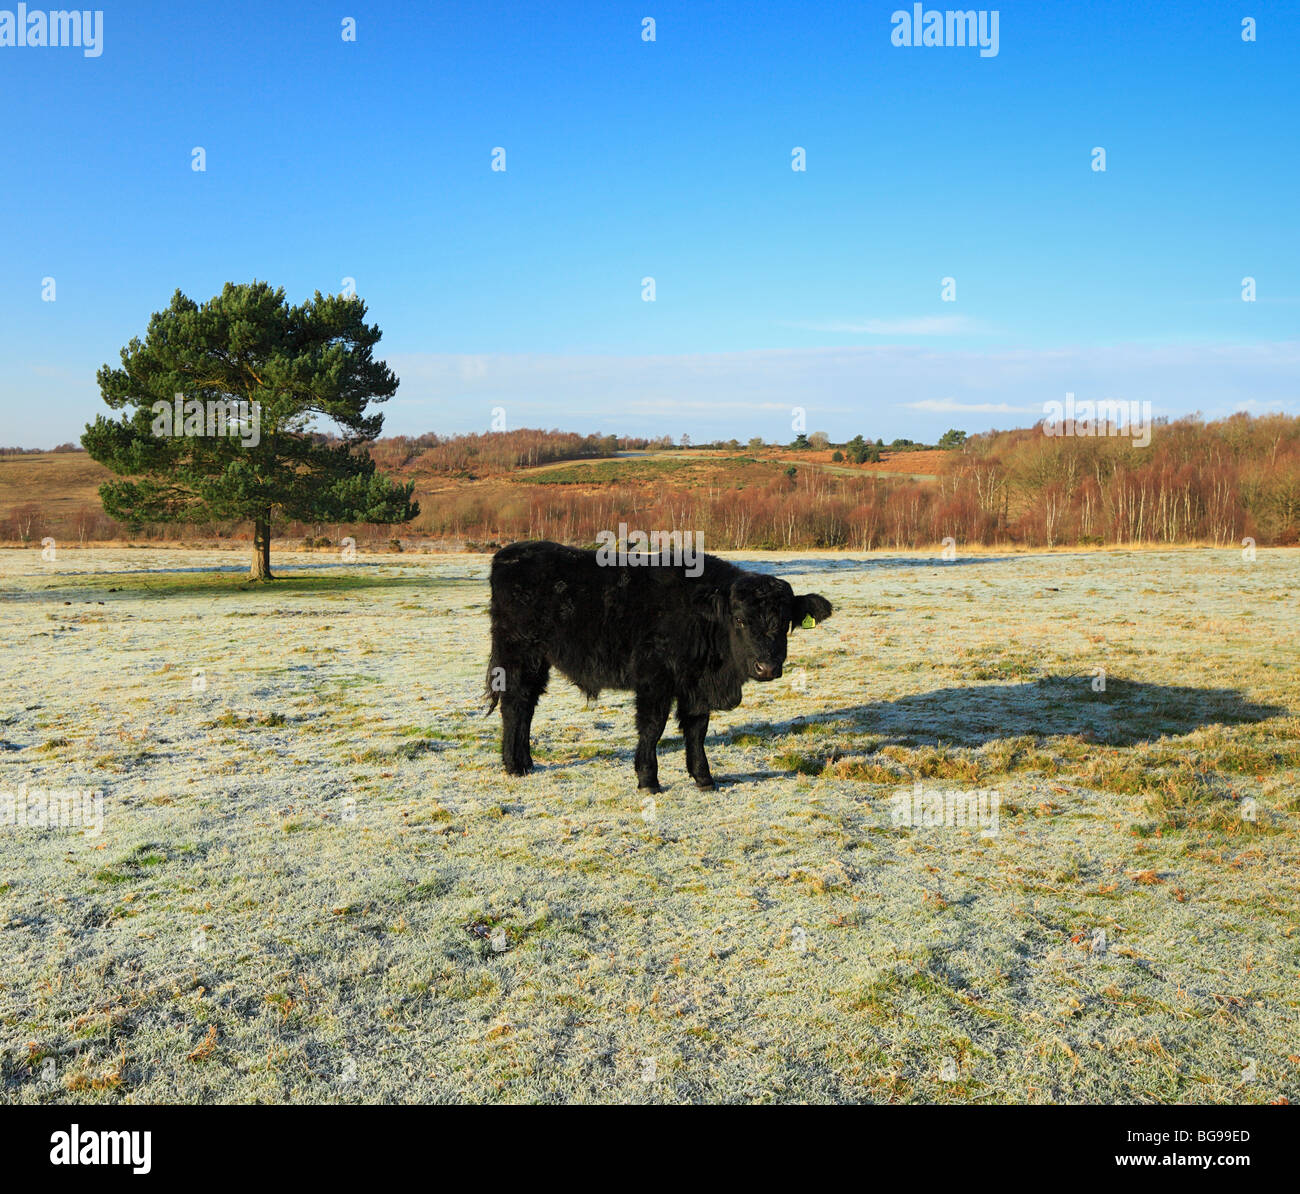 Black Bull in a frozen field. Stock Photo